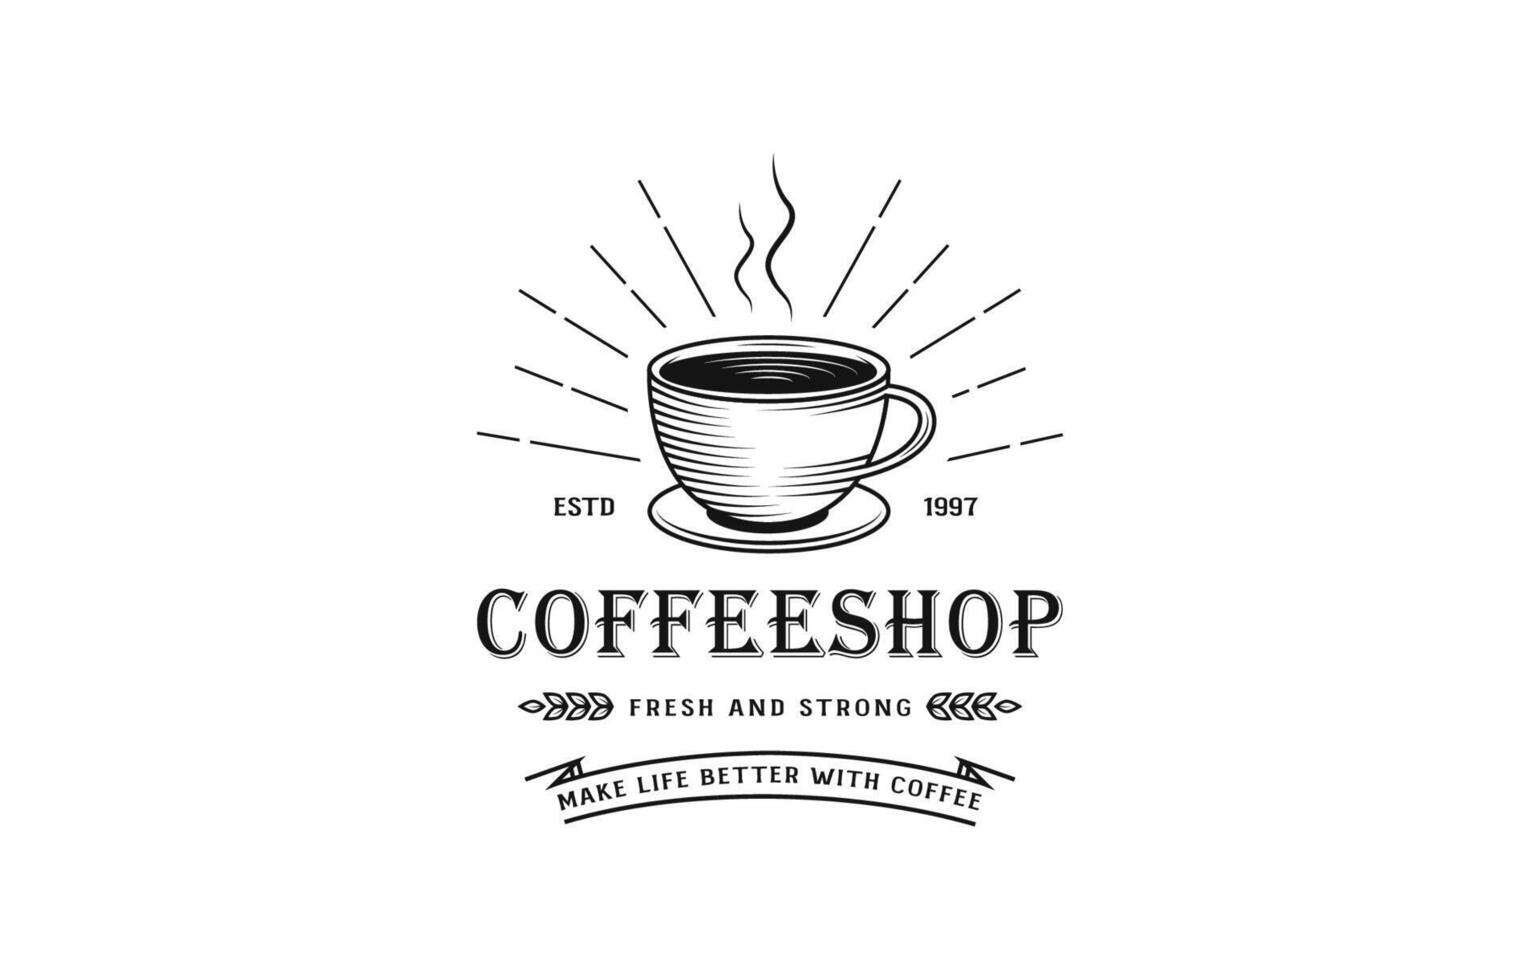 Vintage coffee logo, coffee logo, cafe logo, coffee cup logo, coffee shop logo, vintage logo, retro logo, hot coffee logo, drink coffee logo vector